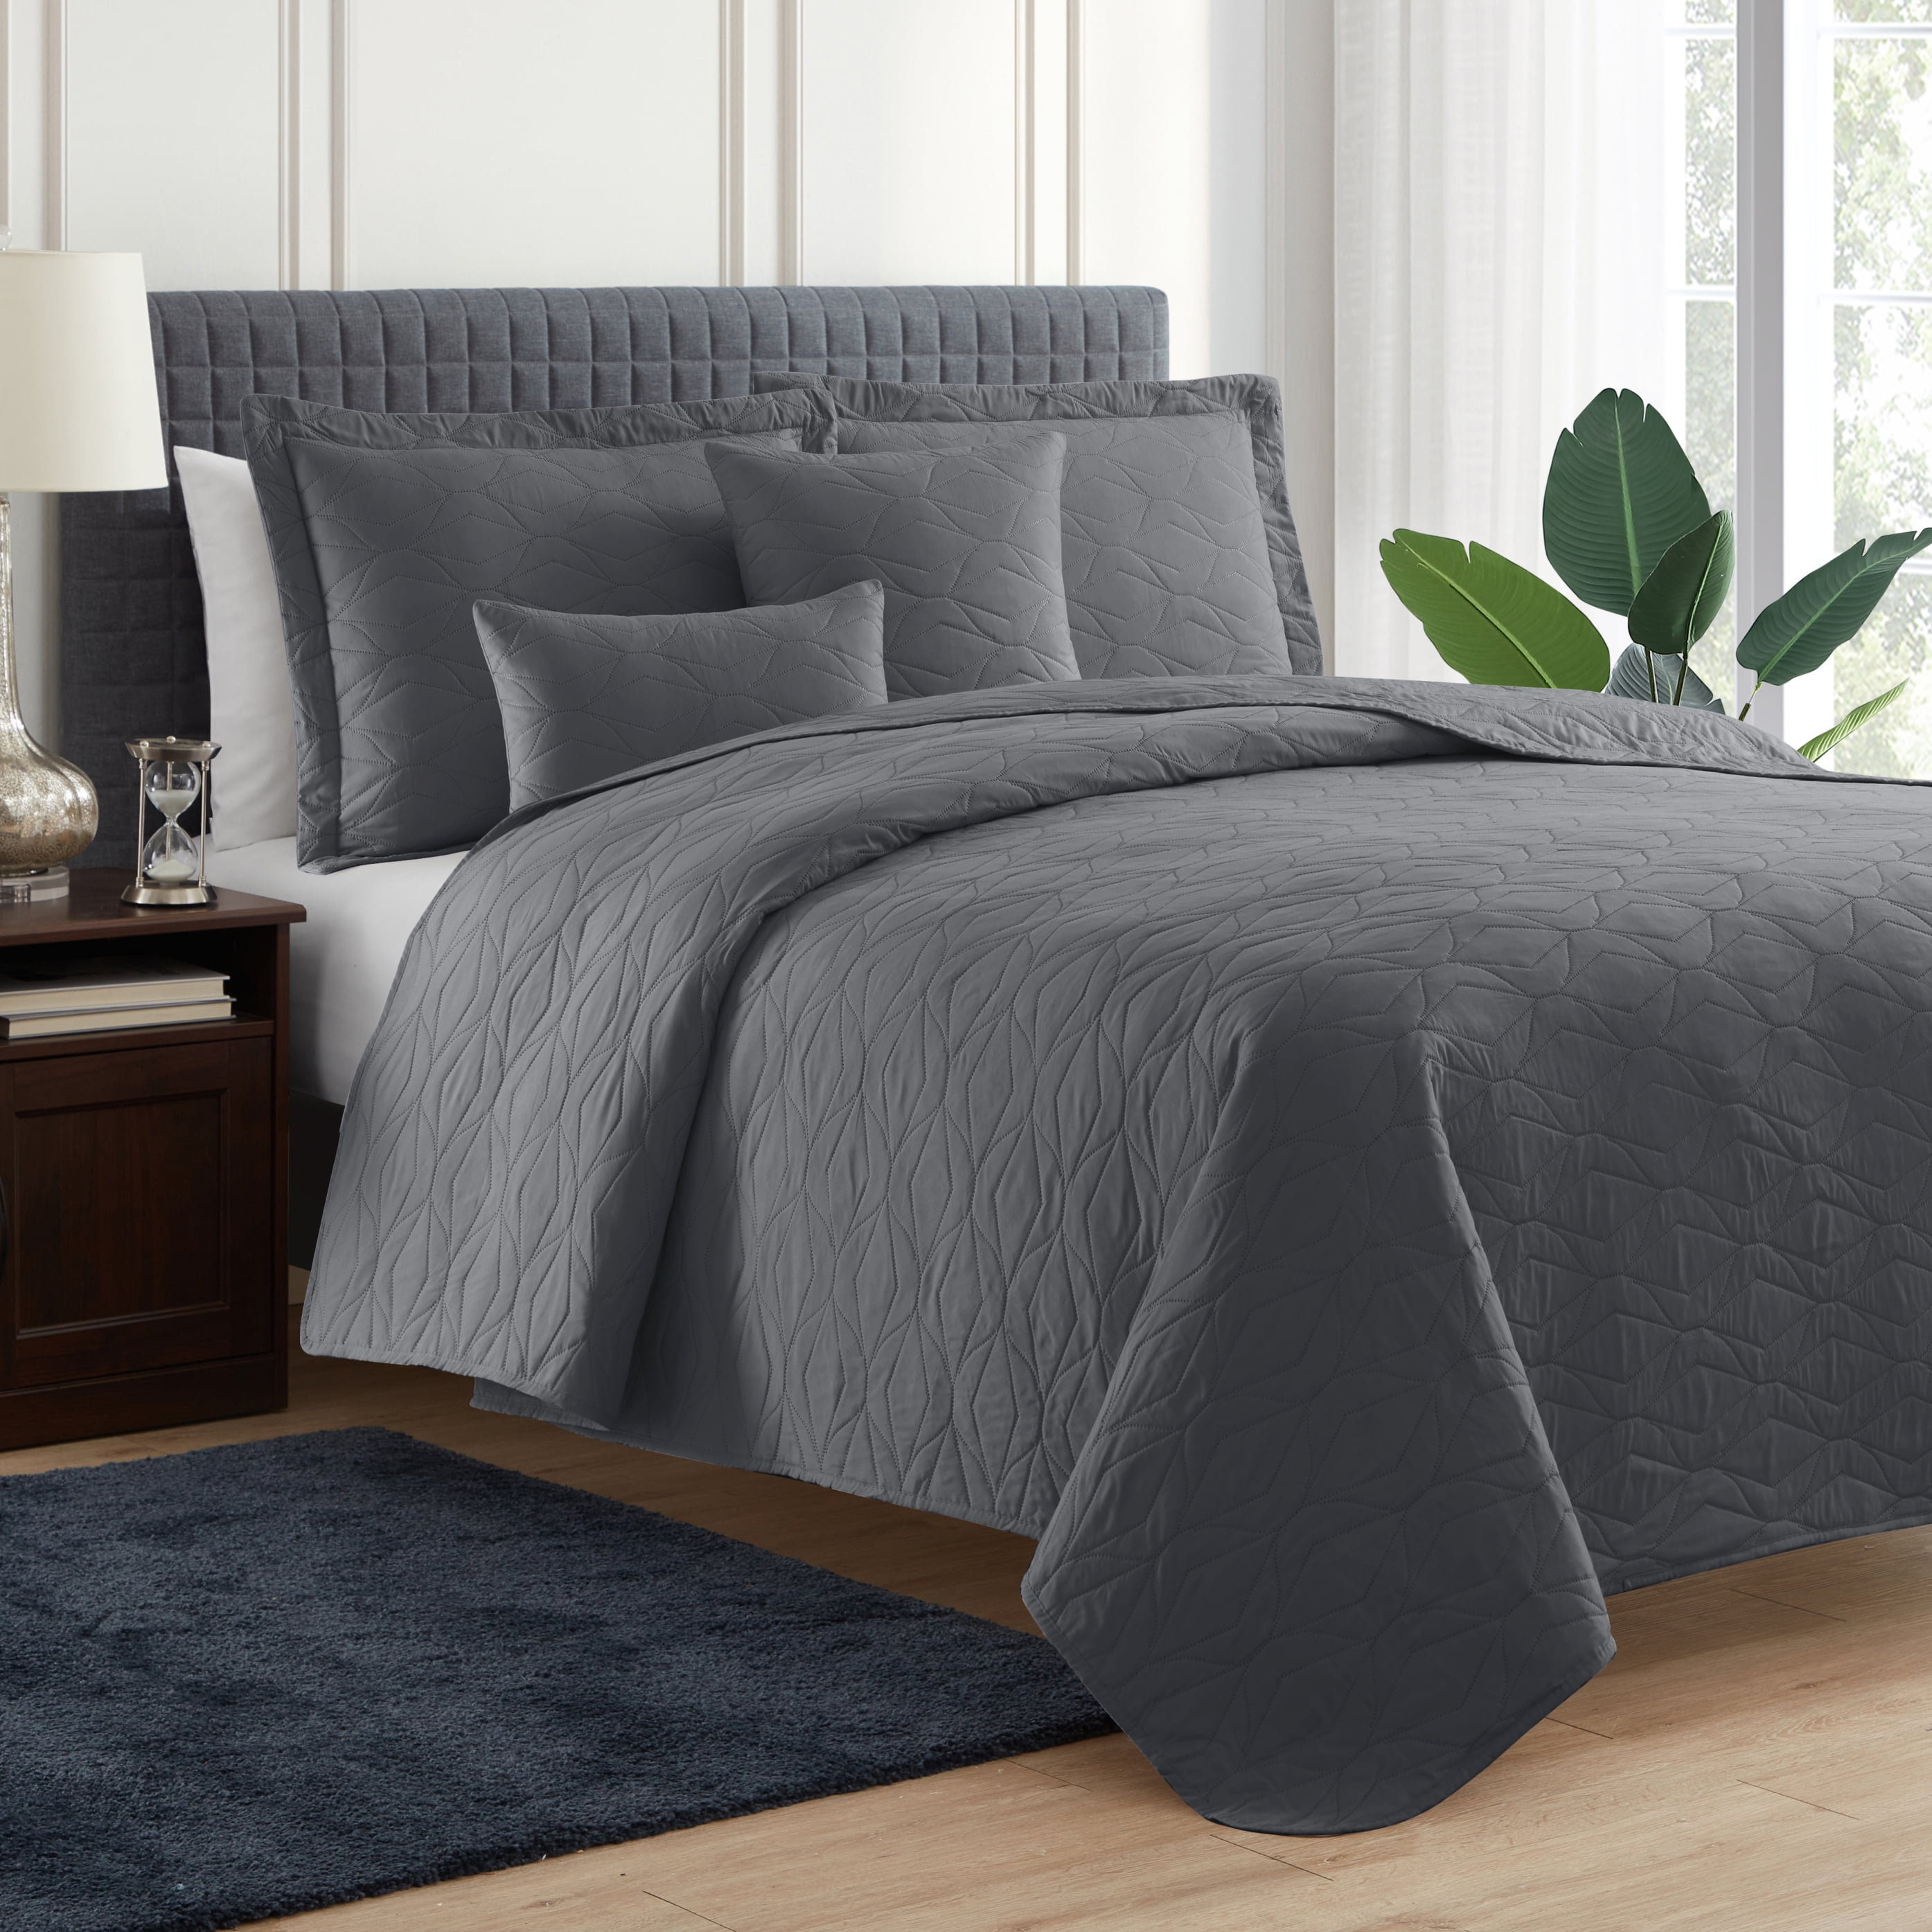 Luxury Bedding Quilt Set Soft Bedspread Pillow Lightweight Microfiber Coverlet 